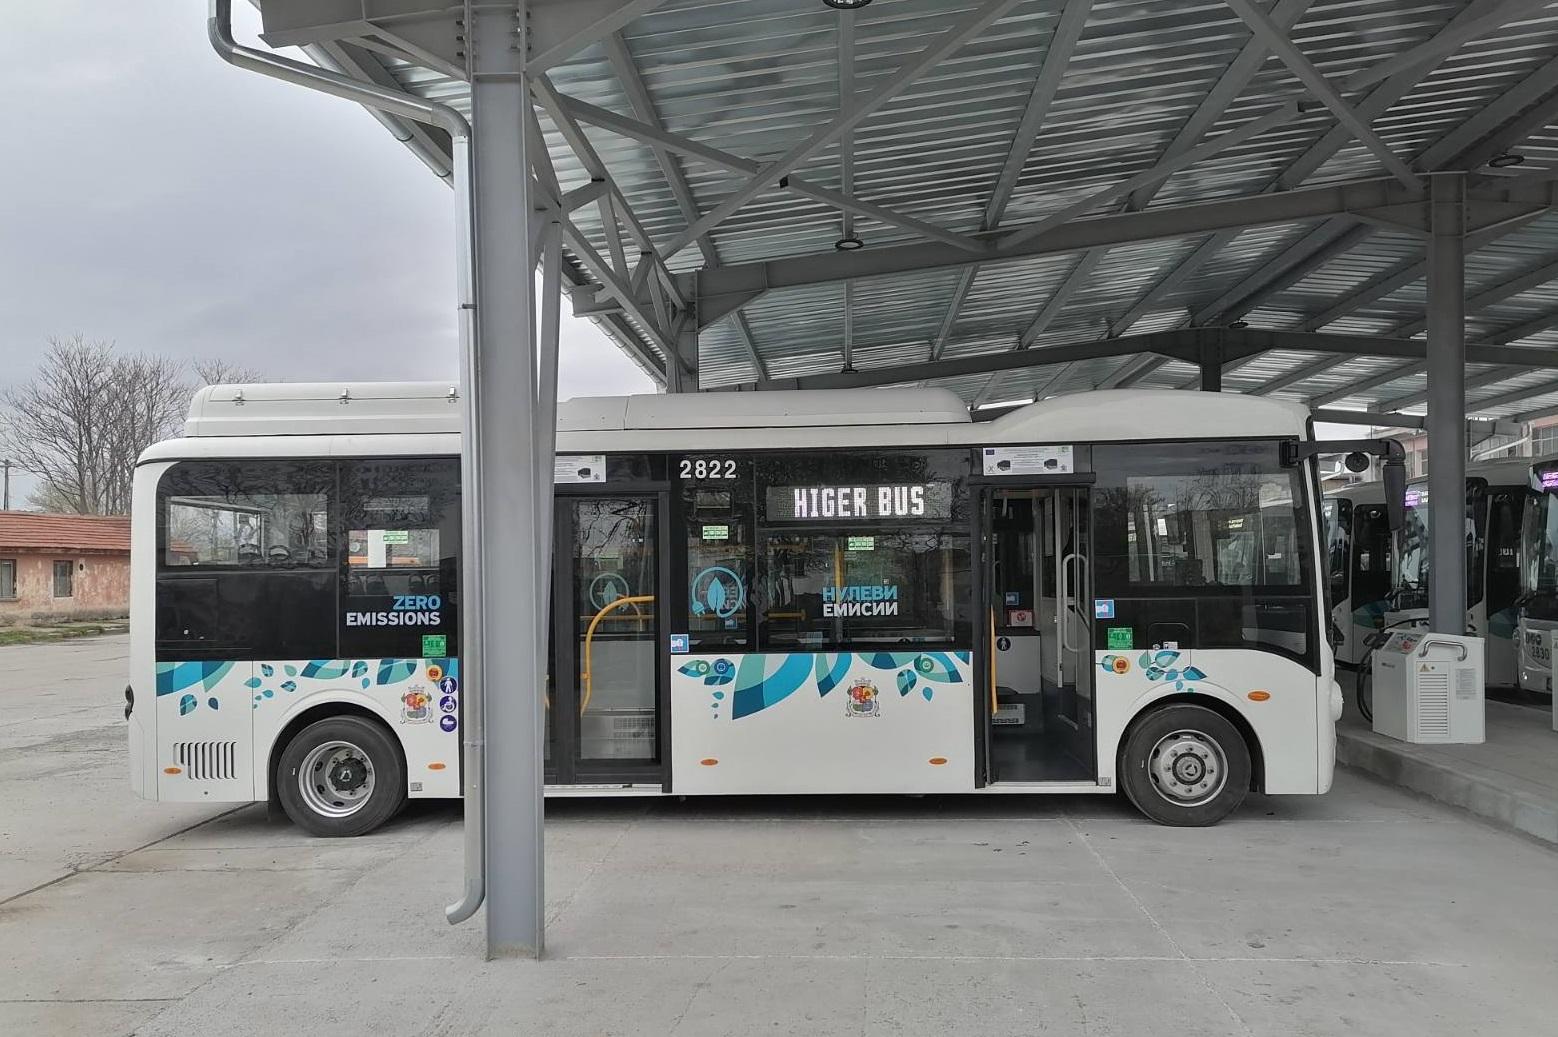 Тръгнаха новите електробуси по автобусните линии 23 и 1000 в София